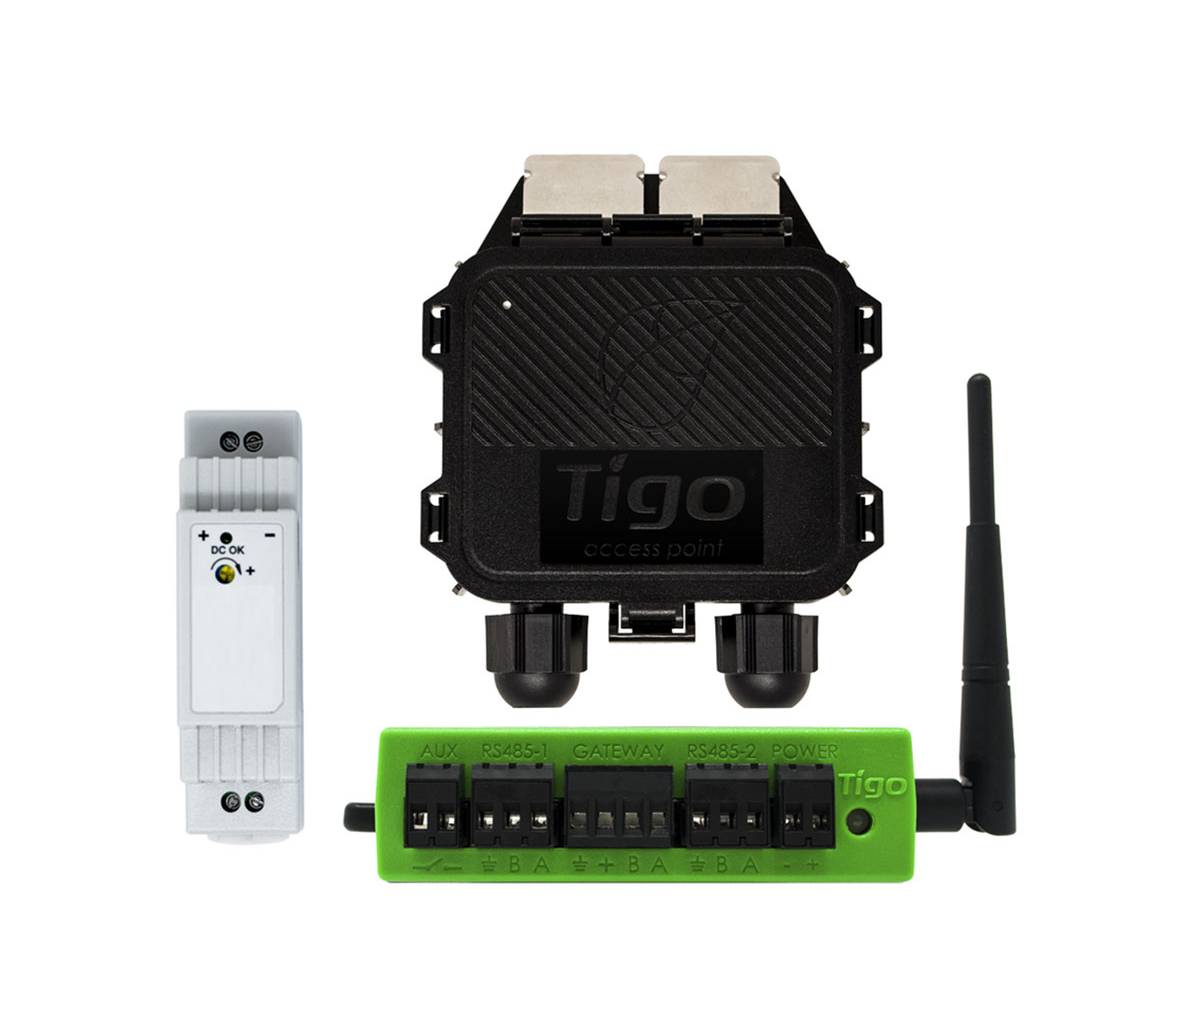 Sistema de monitoreo TIGO -Cloud connect Advanced (CCA) + Tigo Access Point (TAP)